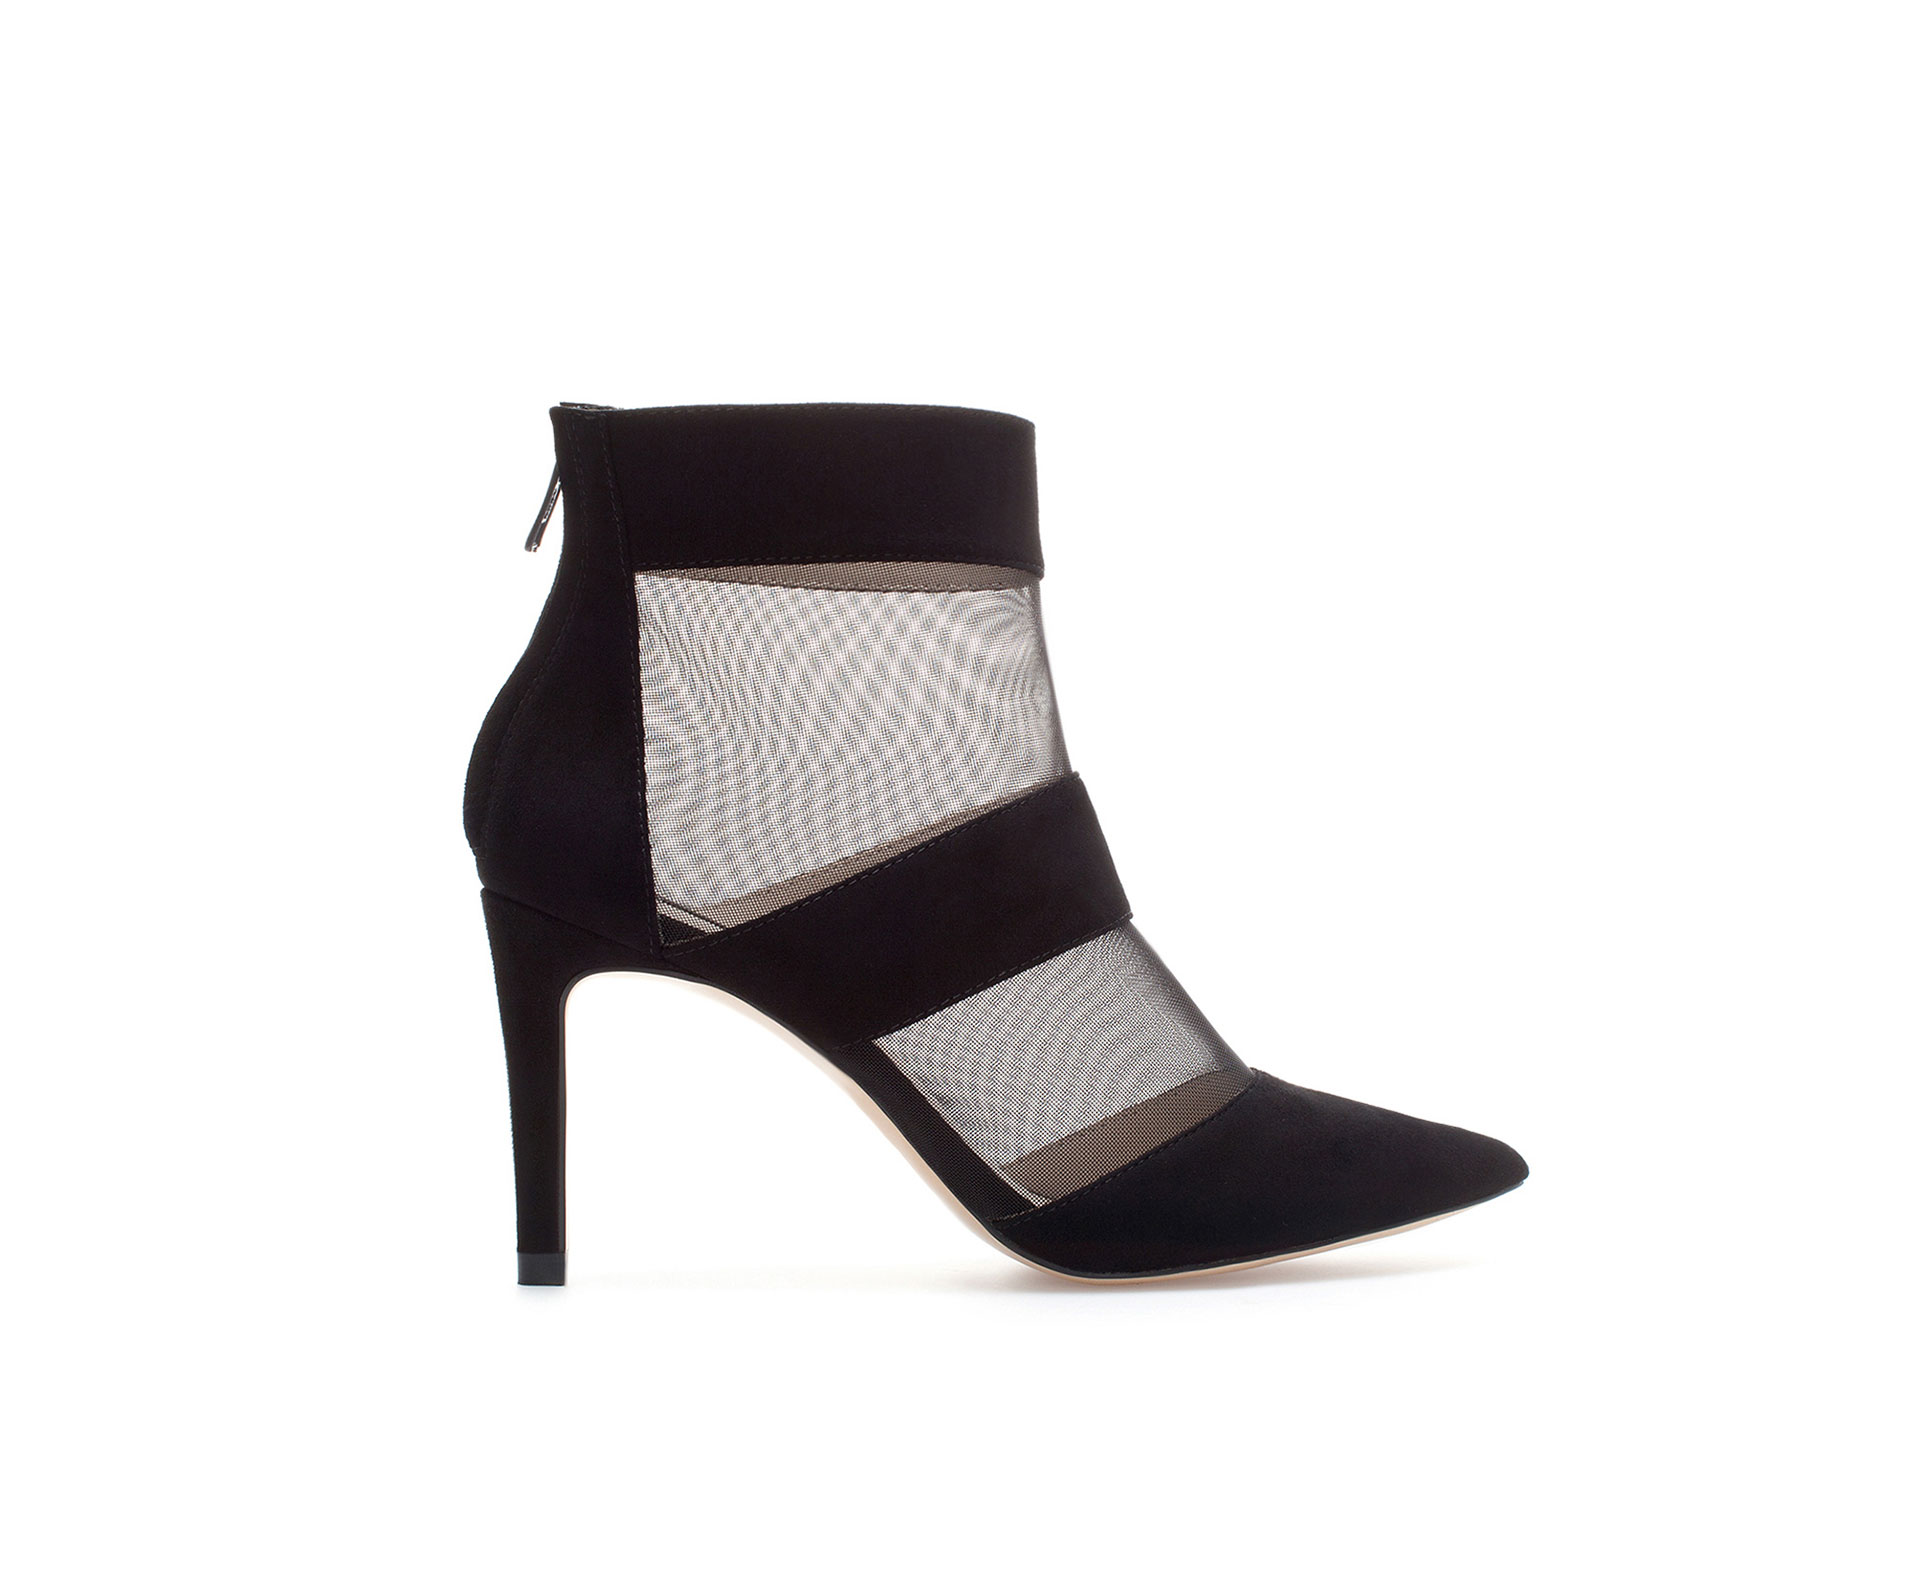 Zara Fishnet Ankle Boot in Black